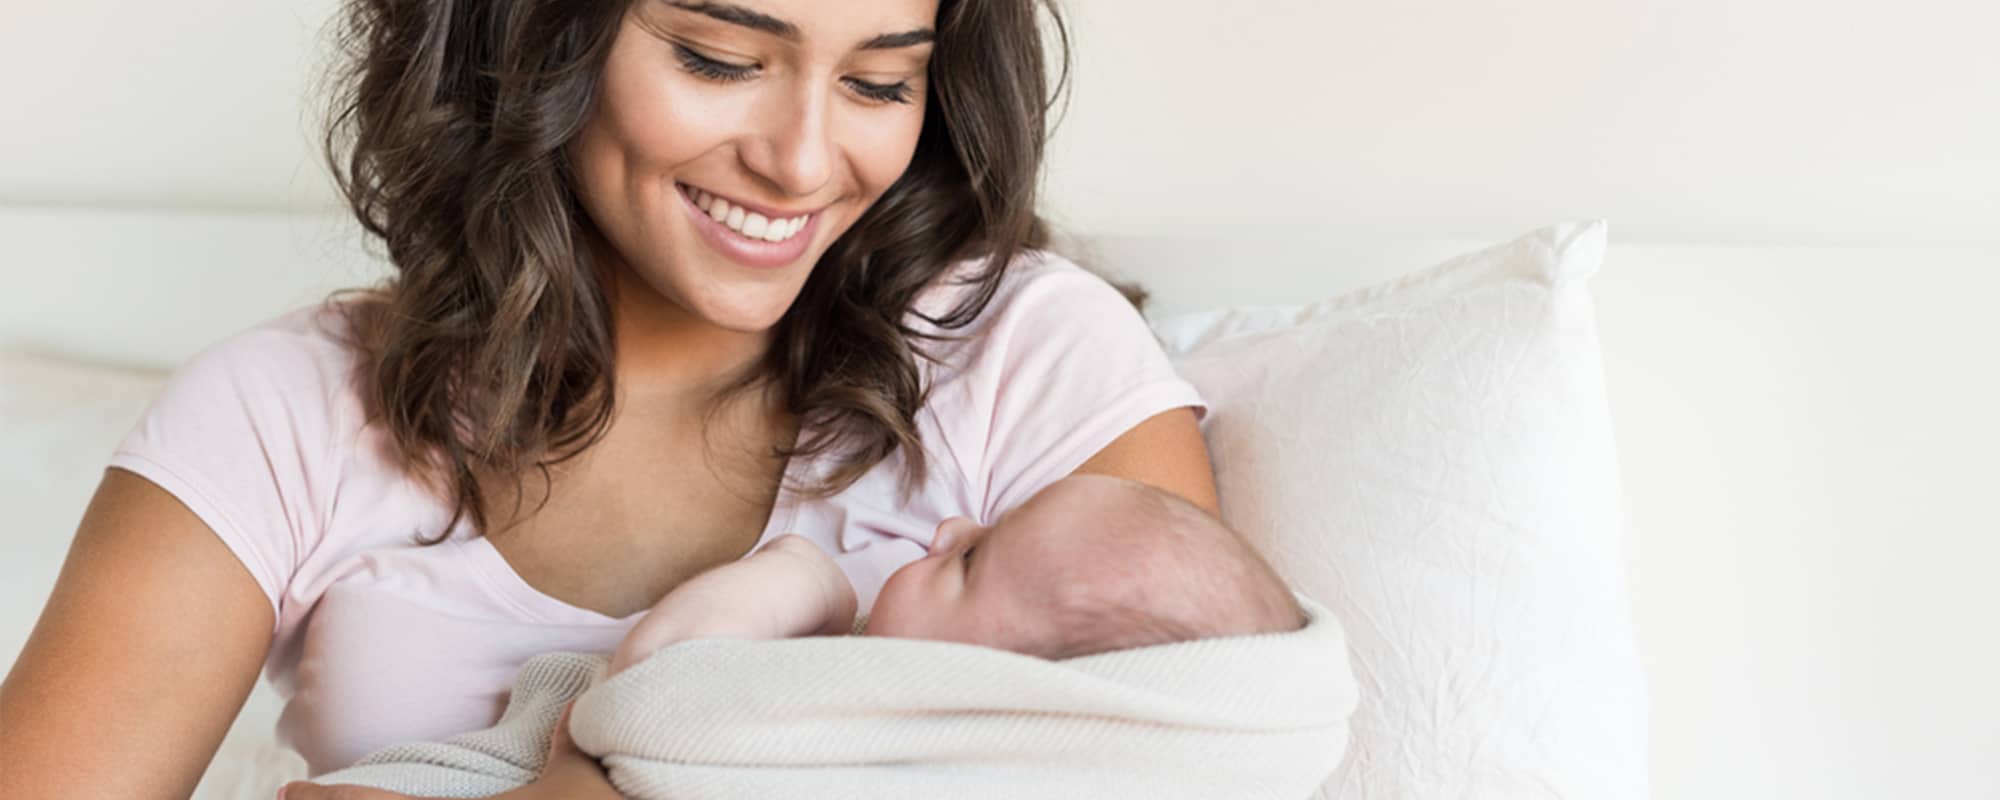 10 Newborn Facts